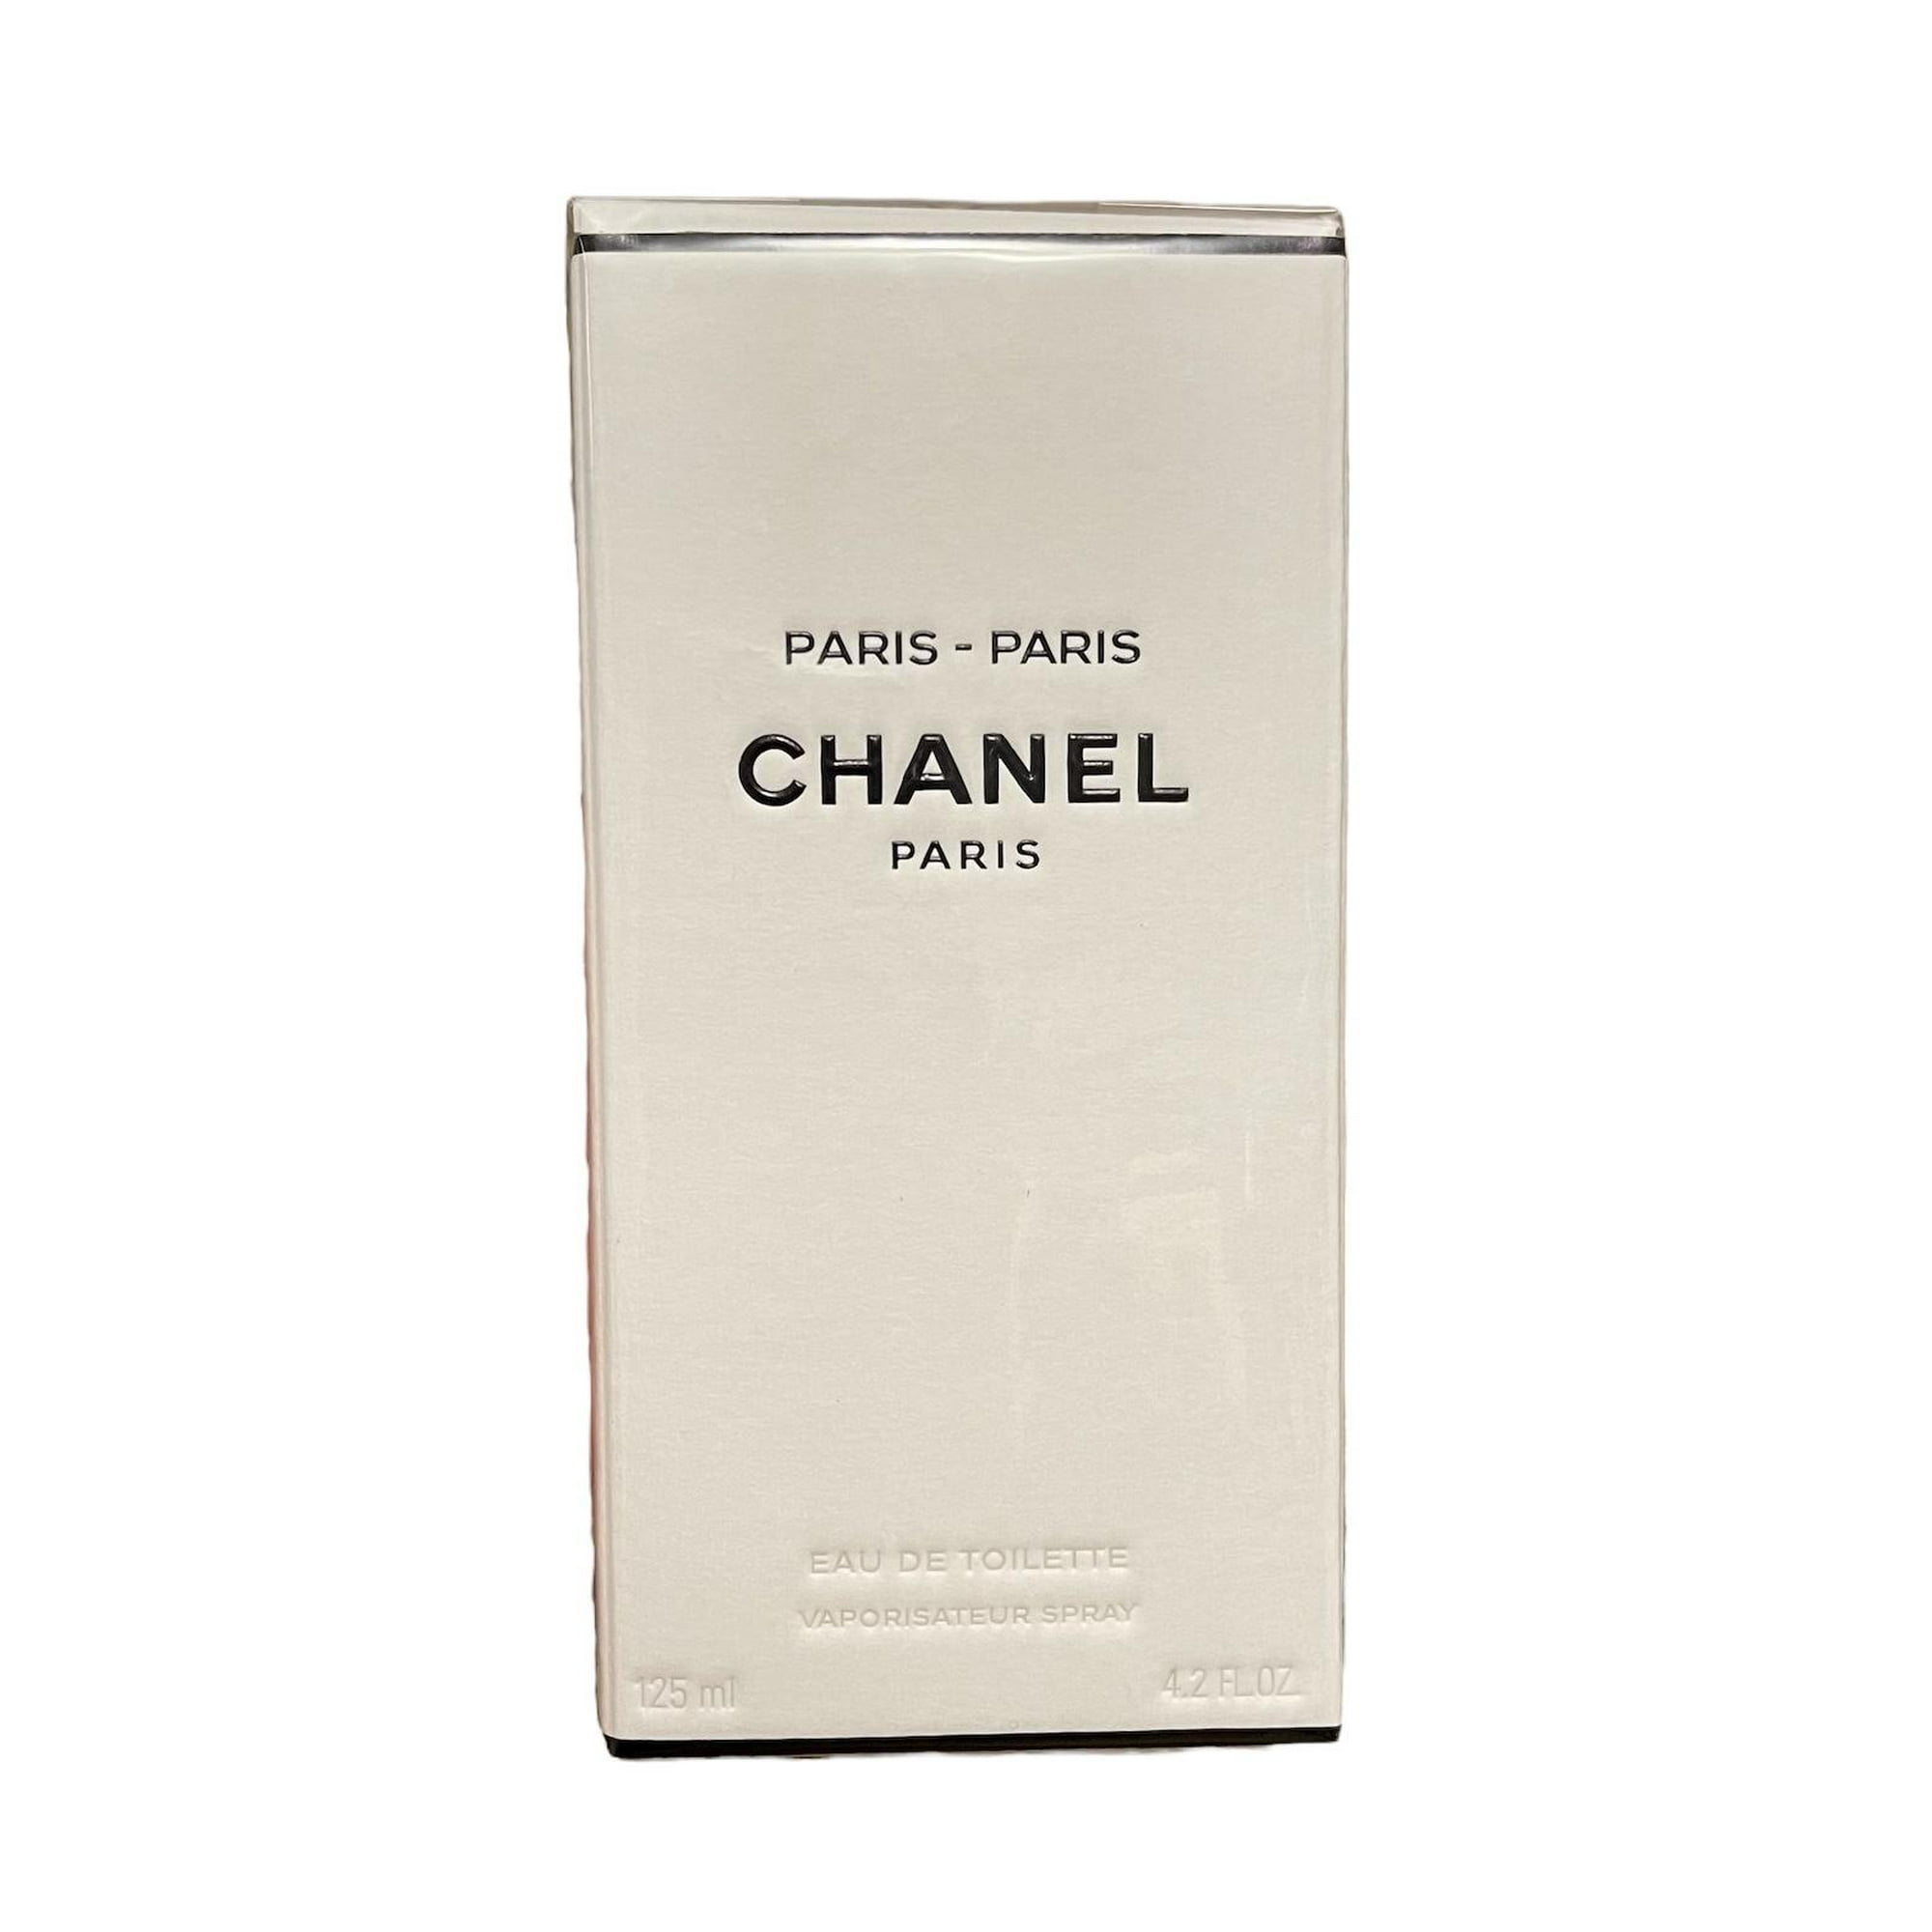 Chanel Paris-Paris Eau De Toilette 125ml